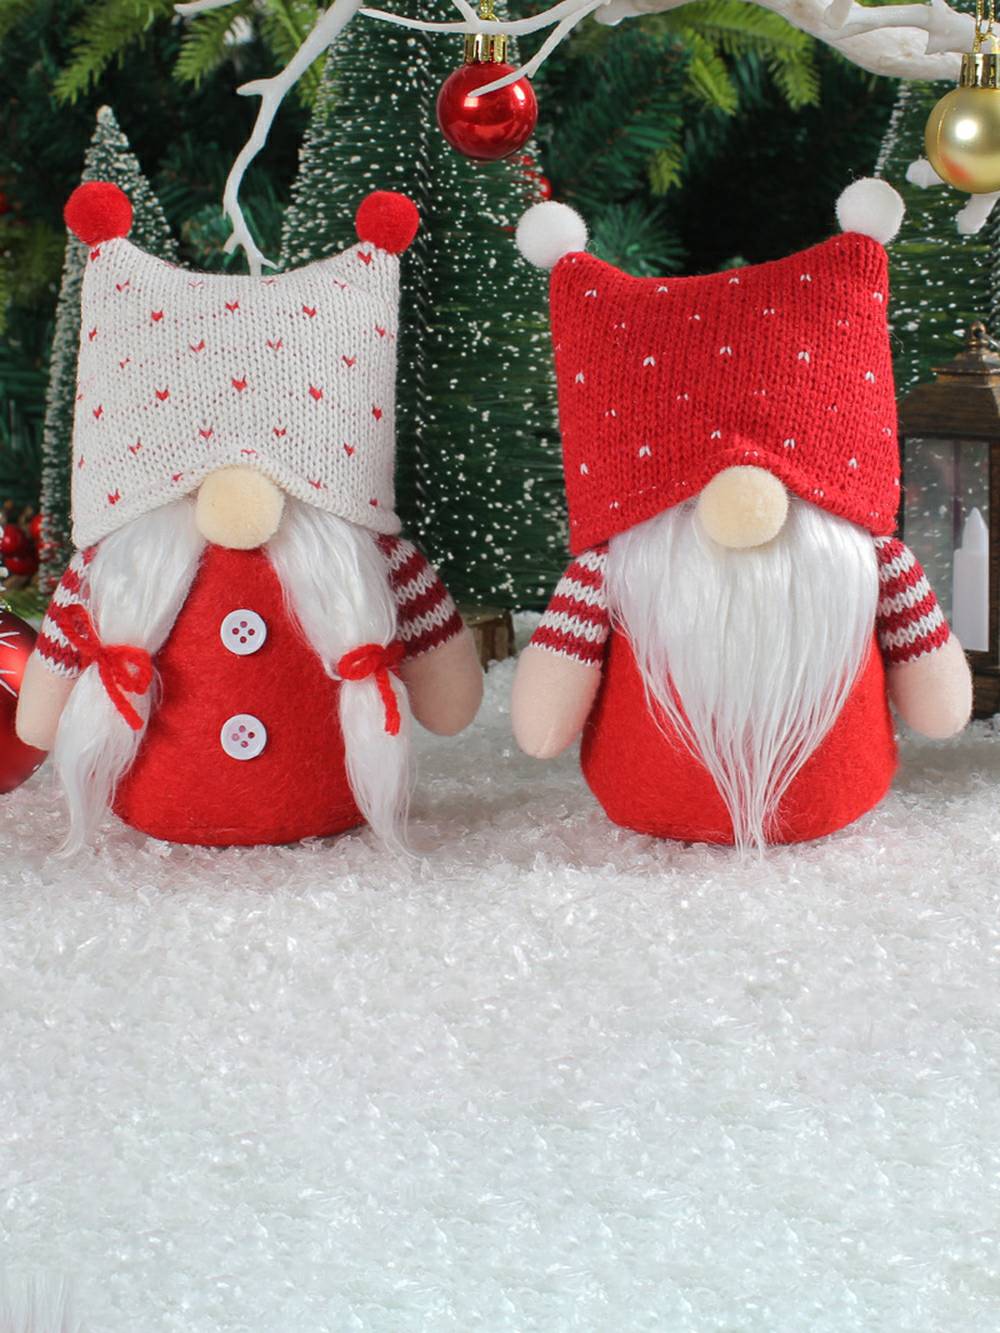 Entzückendes Weihnachts-Plüsch-Elfenpaar mit Strickmütze, Rudolph-Puppen